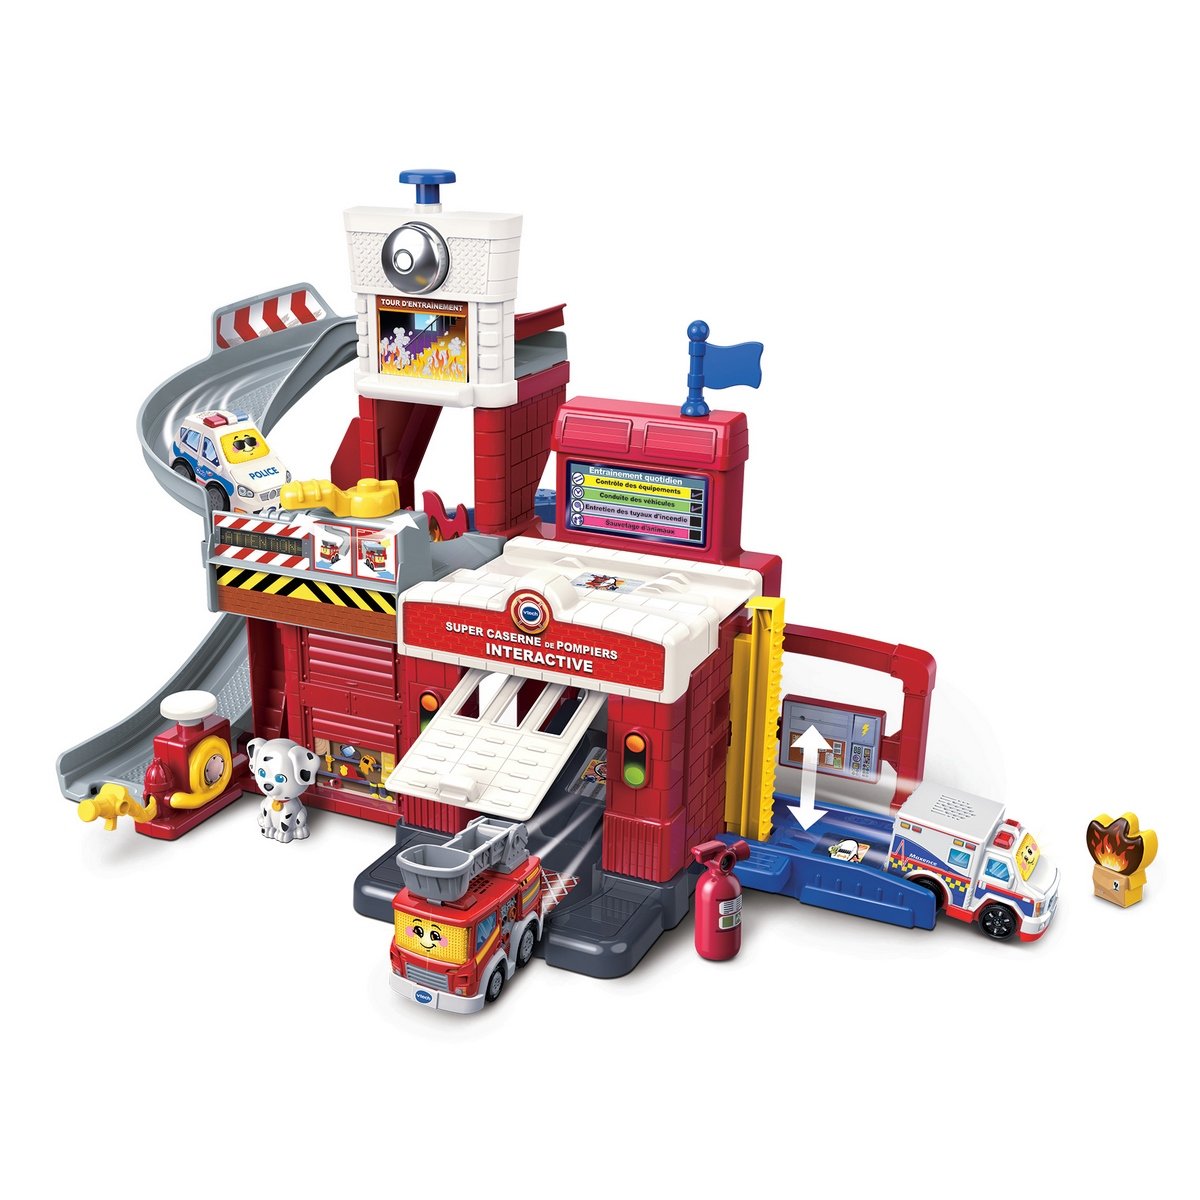 Mon jouet camion de pompier - Tut Tut Bolides - VTech